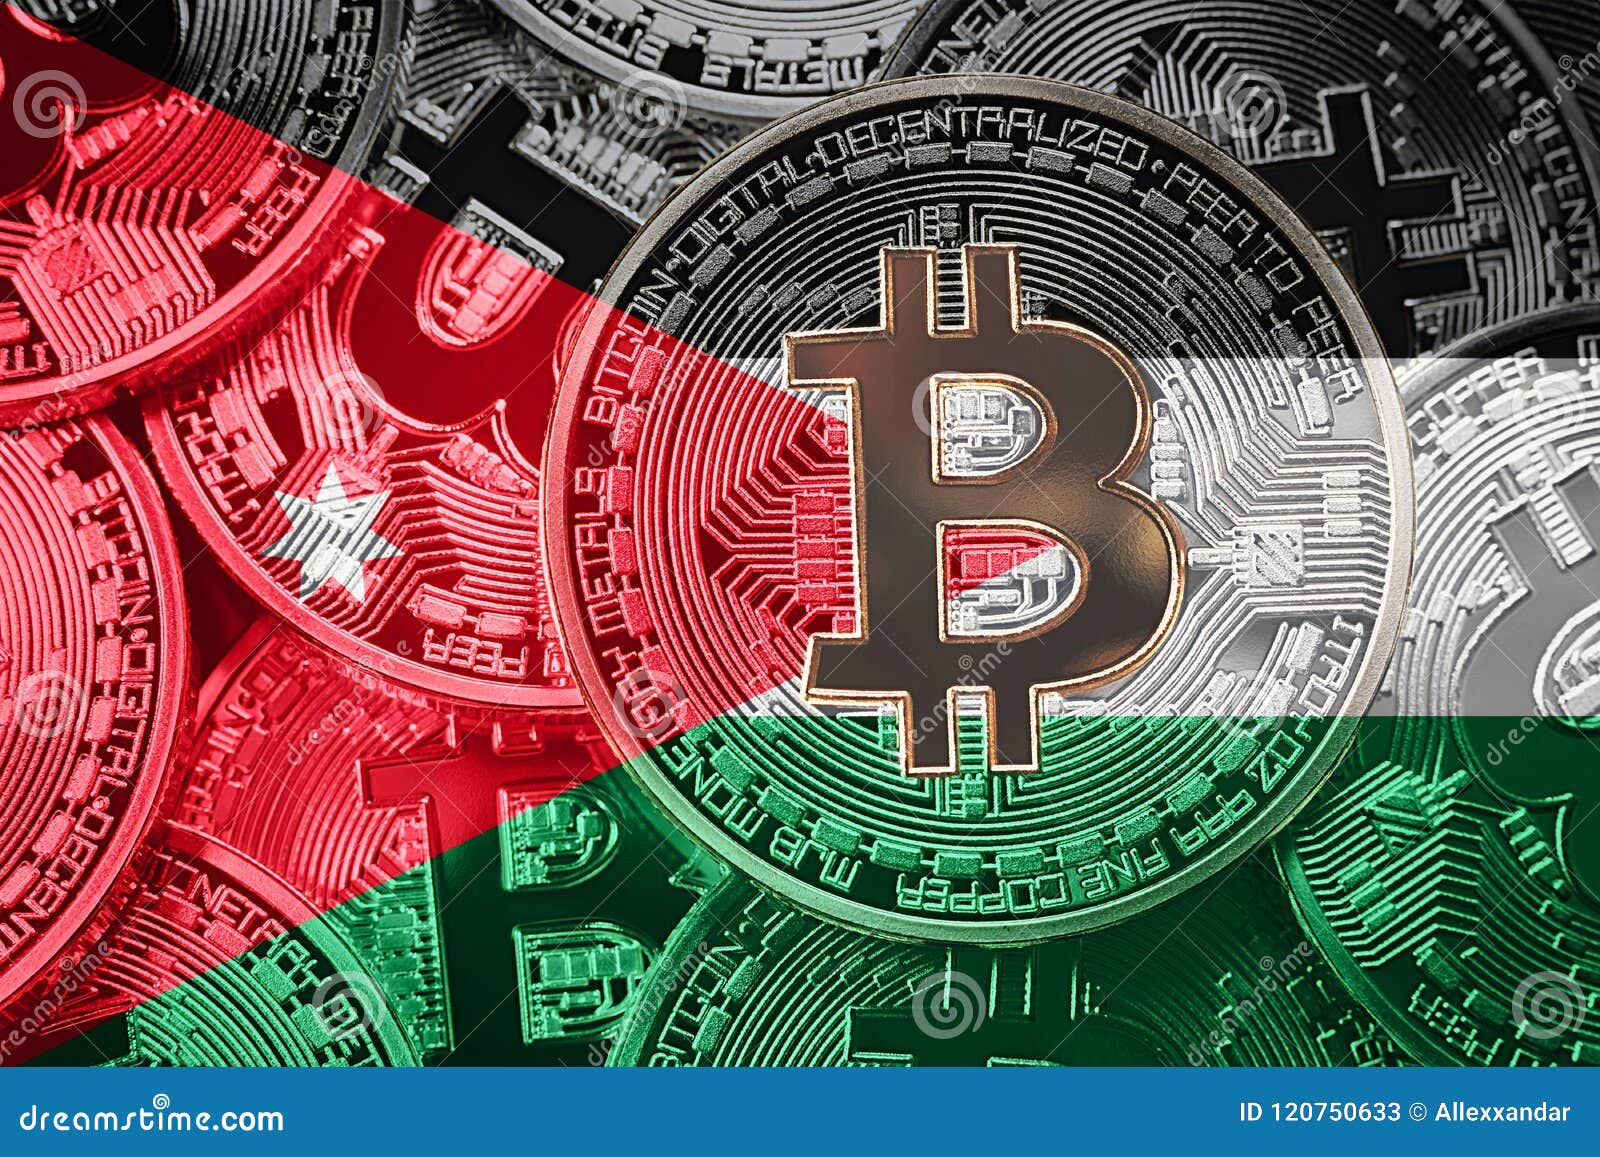 how to buy bitcoin in jordan